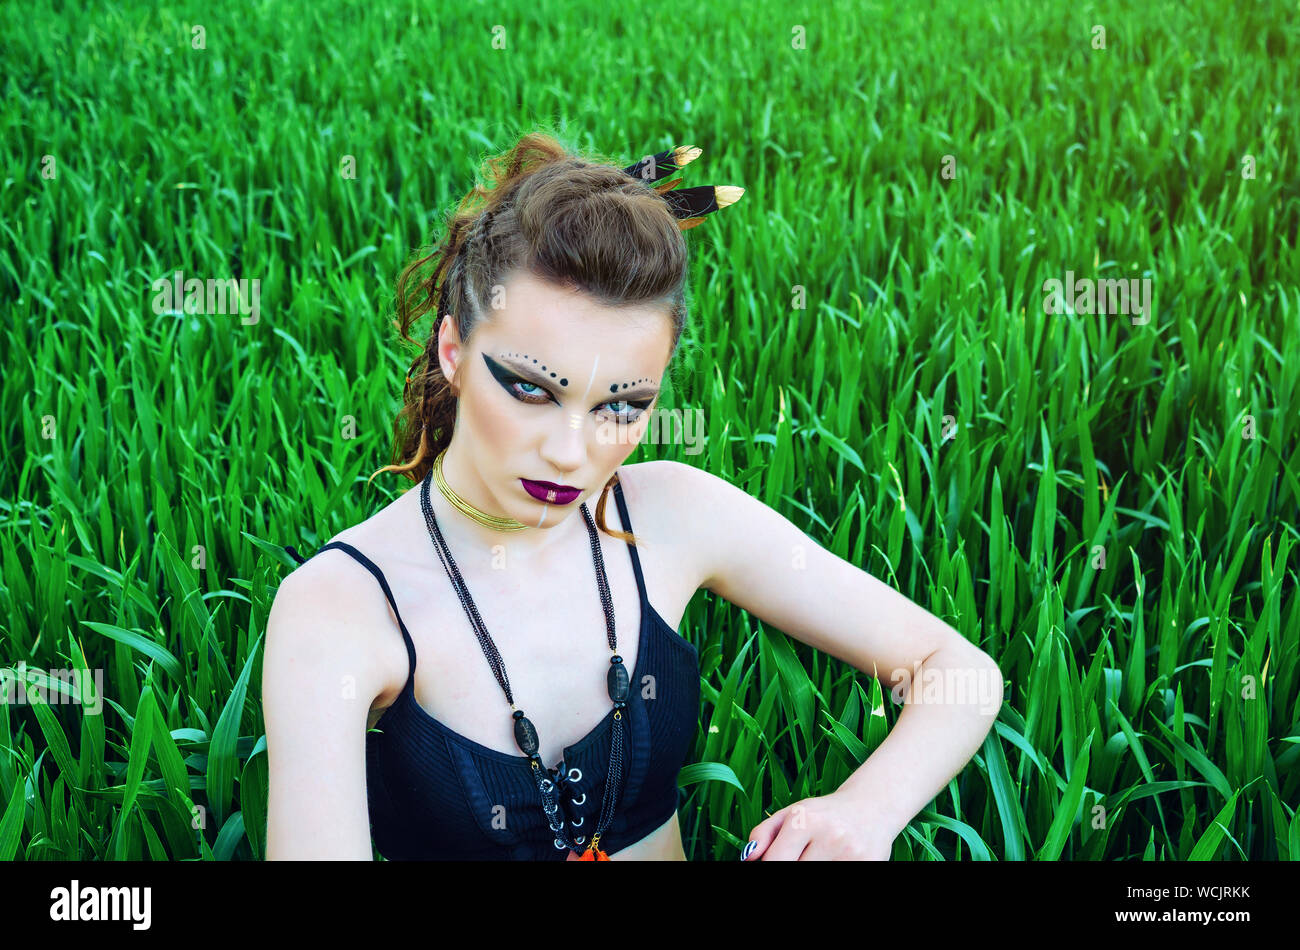 Aggressive Make-up Girl, Schlacht Gemälde des Gesicht von Amazon in einem  Feld inmitten grüner Weizen. Feminismus, der Unabhängigkeit, der Stamm  Stockfotografie - Alamy